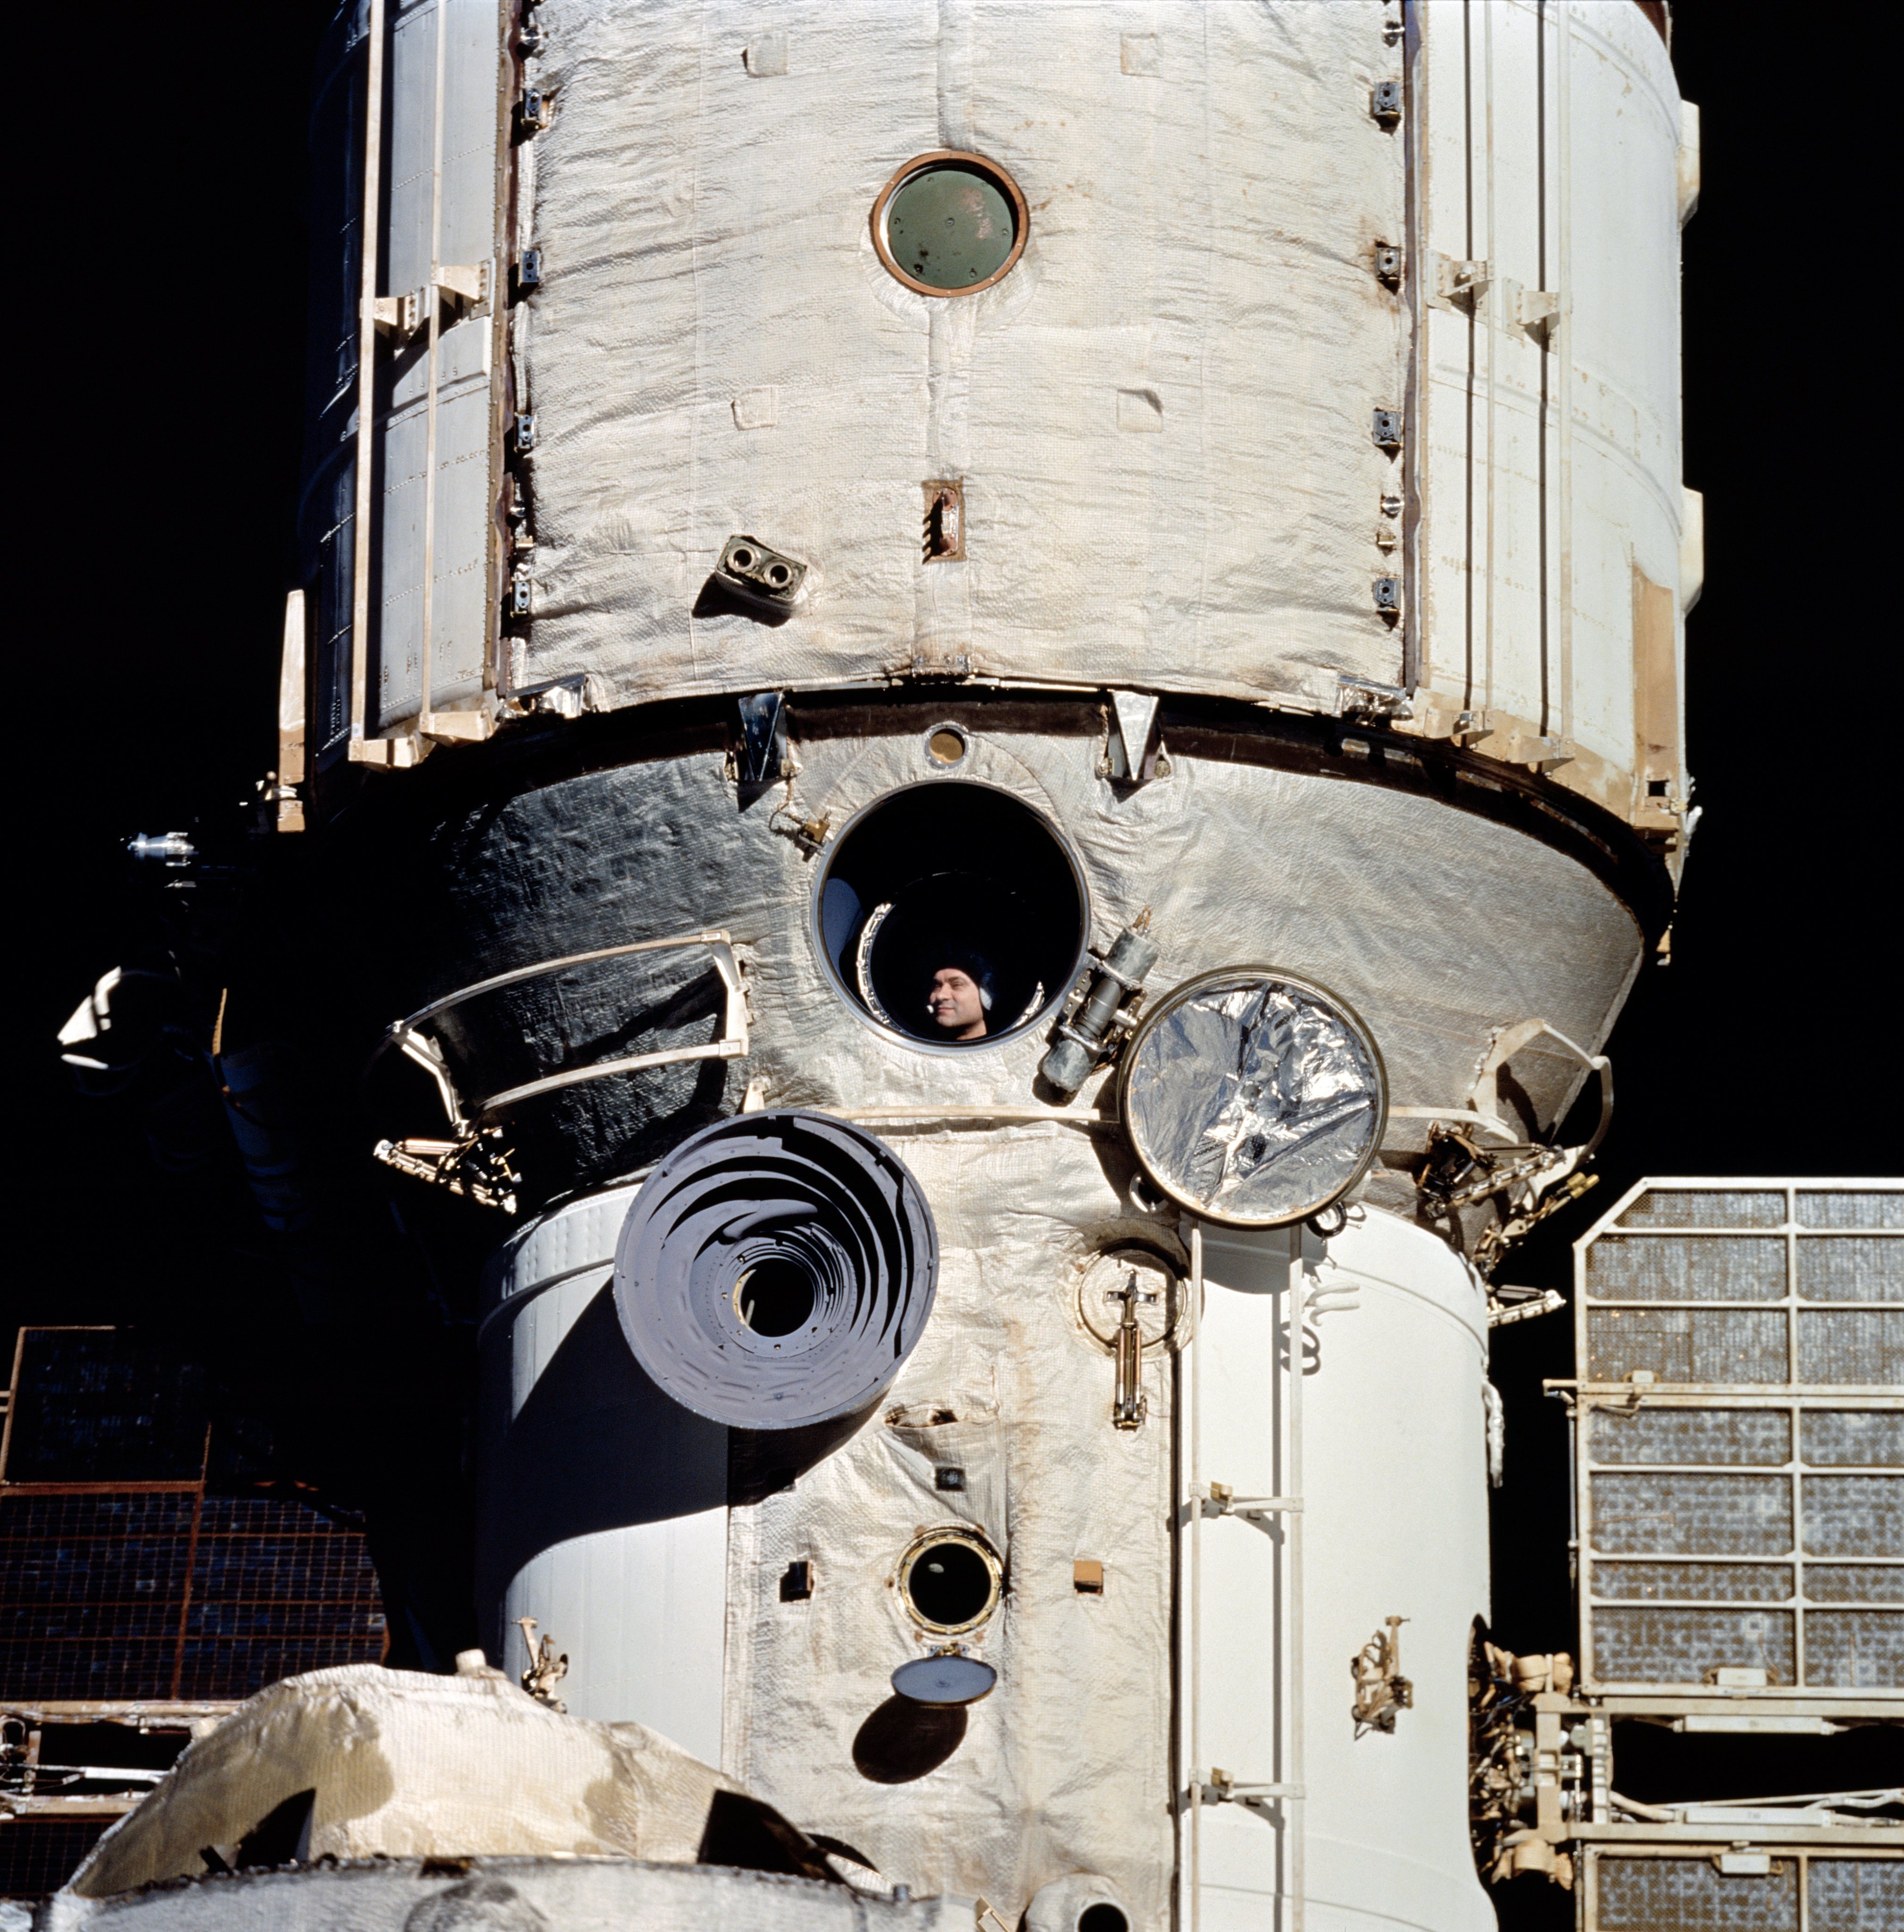 À janela da estação espacial Mir, o cosmonauta Valeri Polyakov aguarda o encontro com a nave espacial norte-americana Discovery